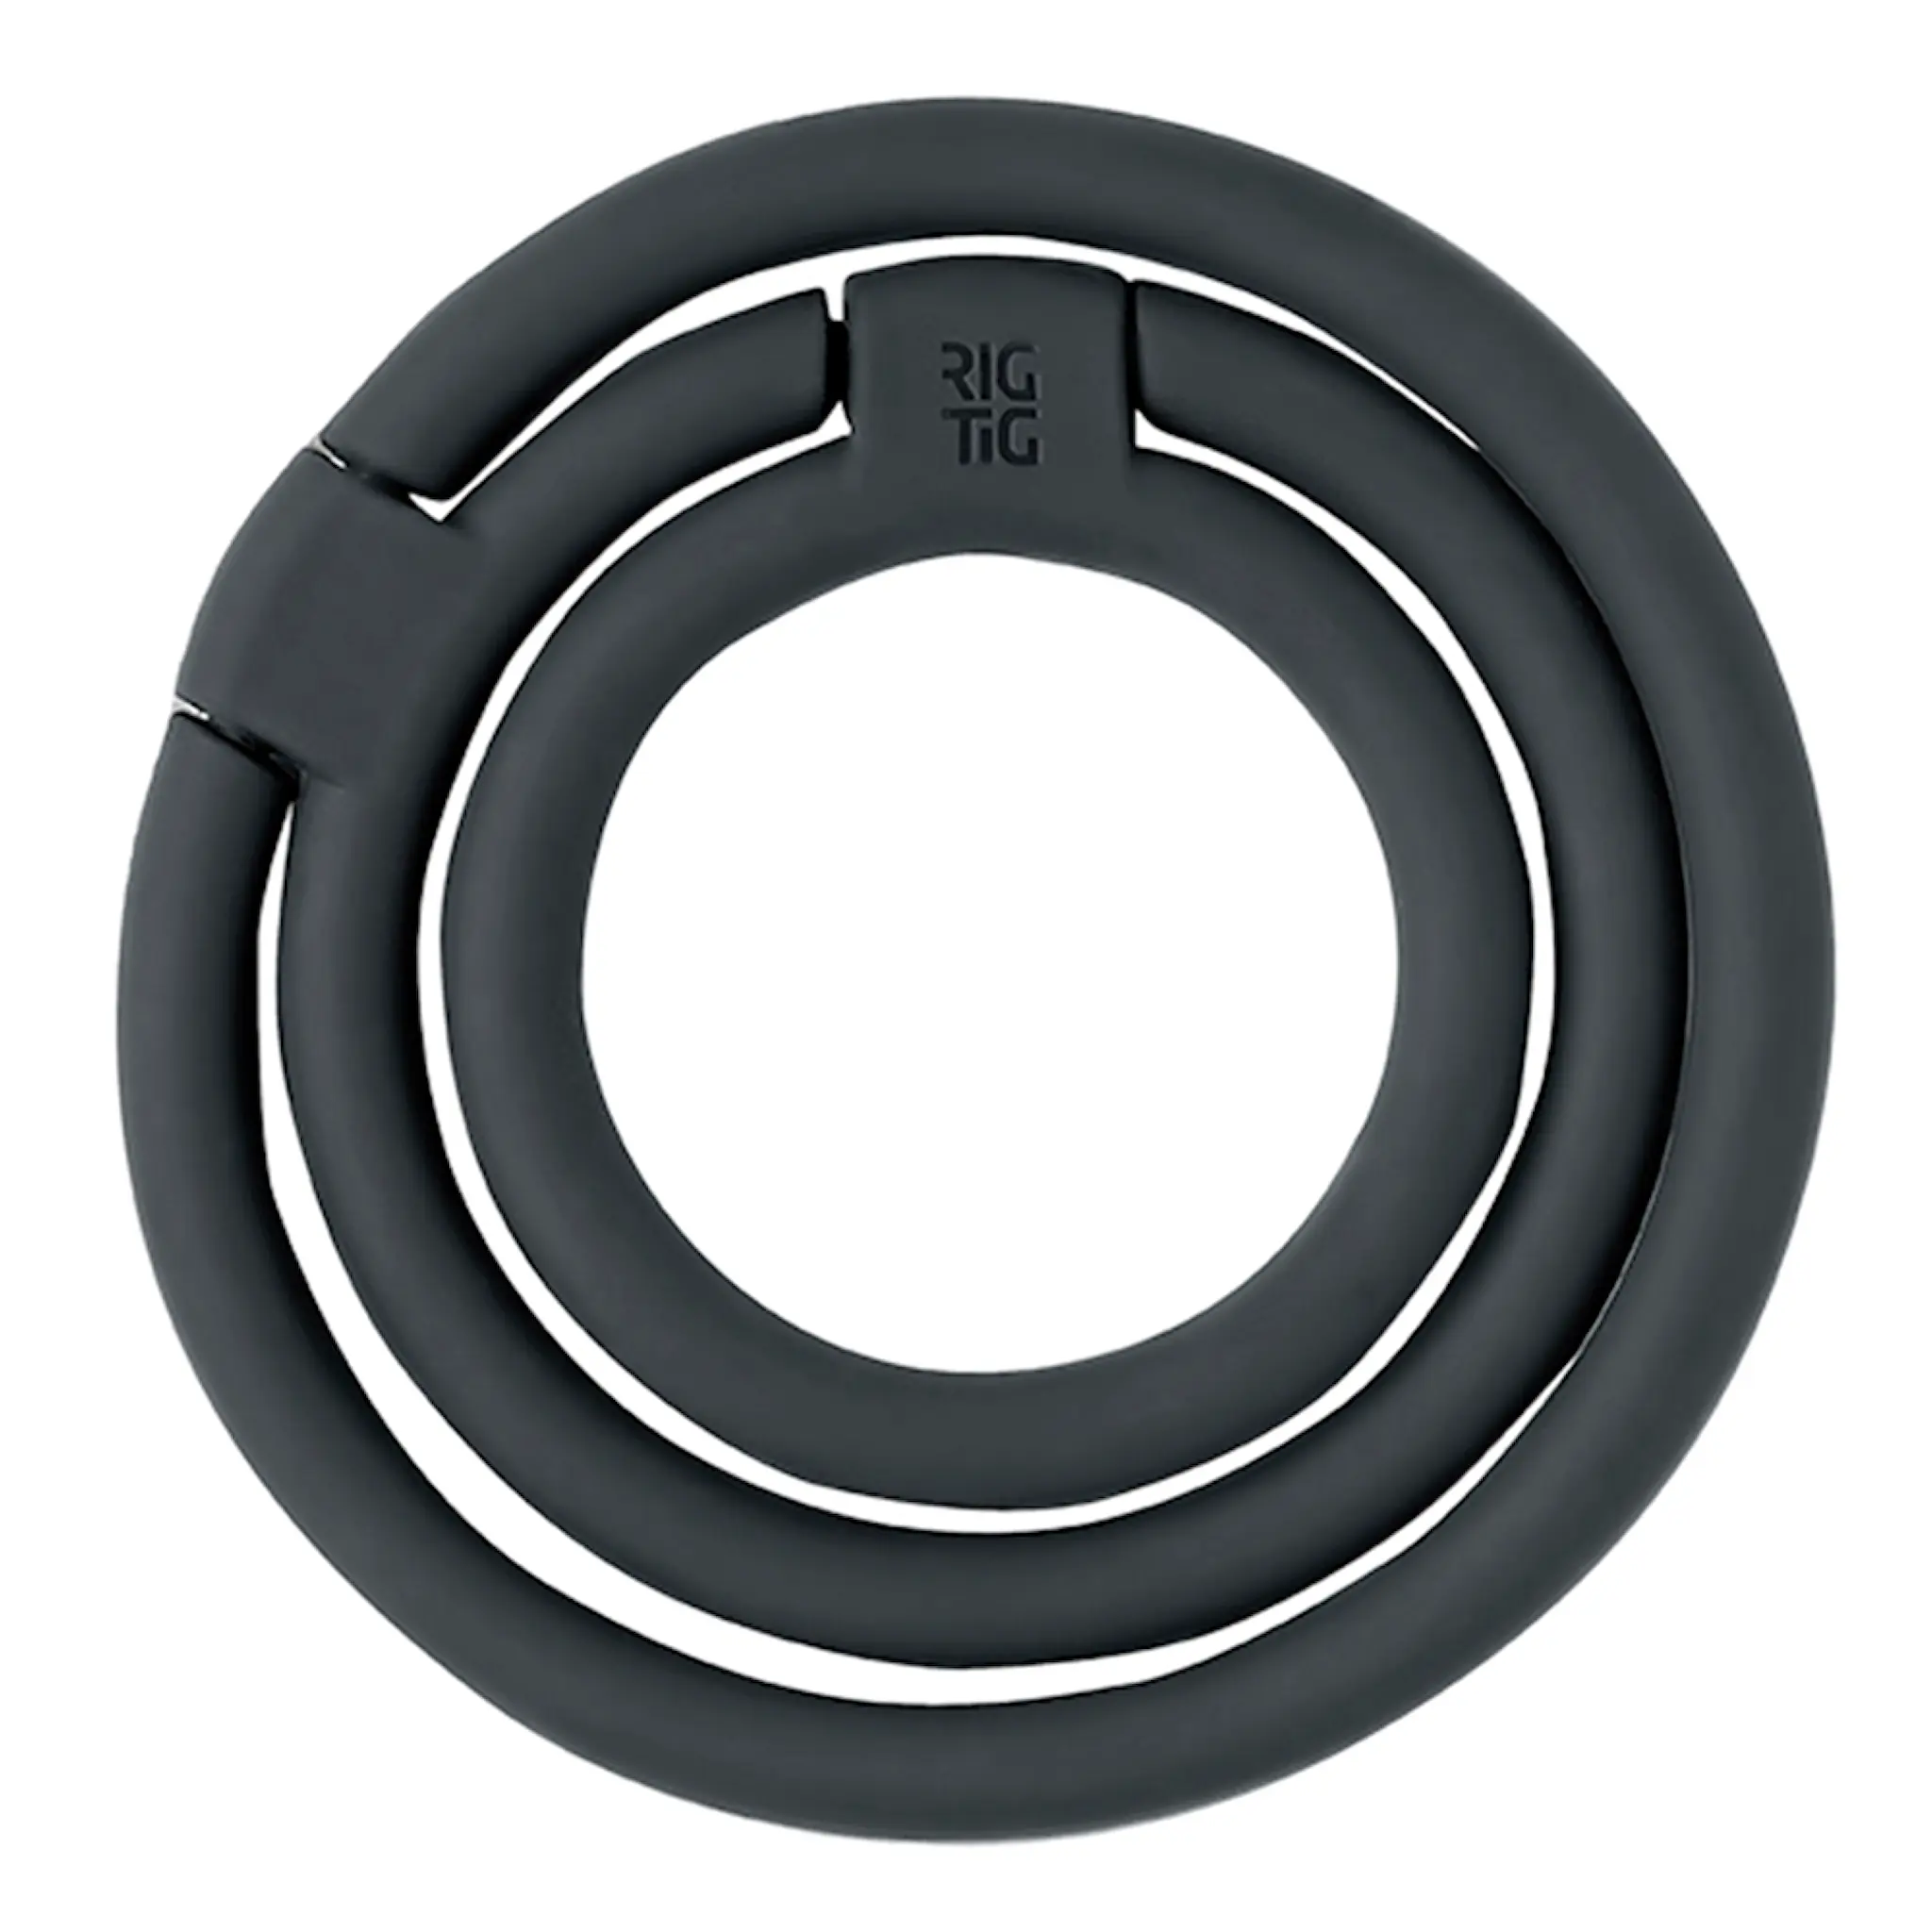 RIG-TIG Circles Pannunalunen 13 cm Musta